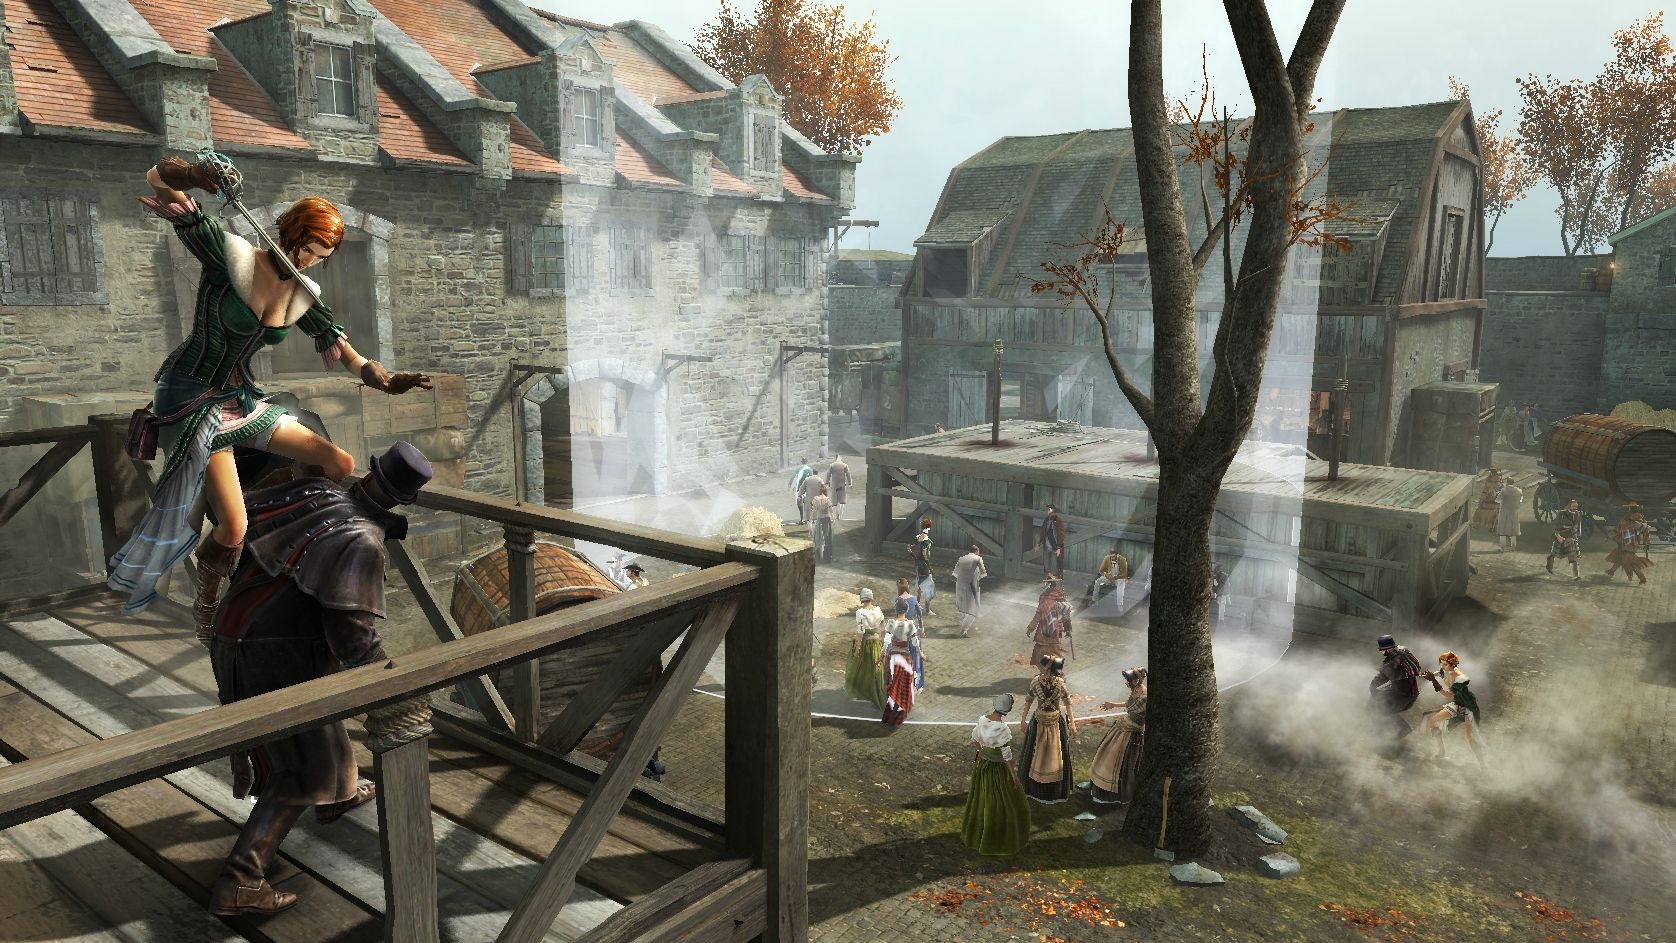 Игры вый. Assassin's Creed 3. Assassin’s Creed III – 2012. Ассасин скрин 3. Assassin's Creed 3 мультиплеер.